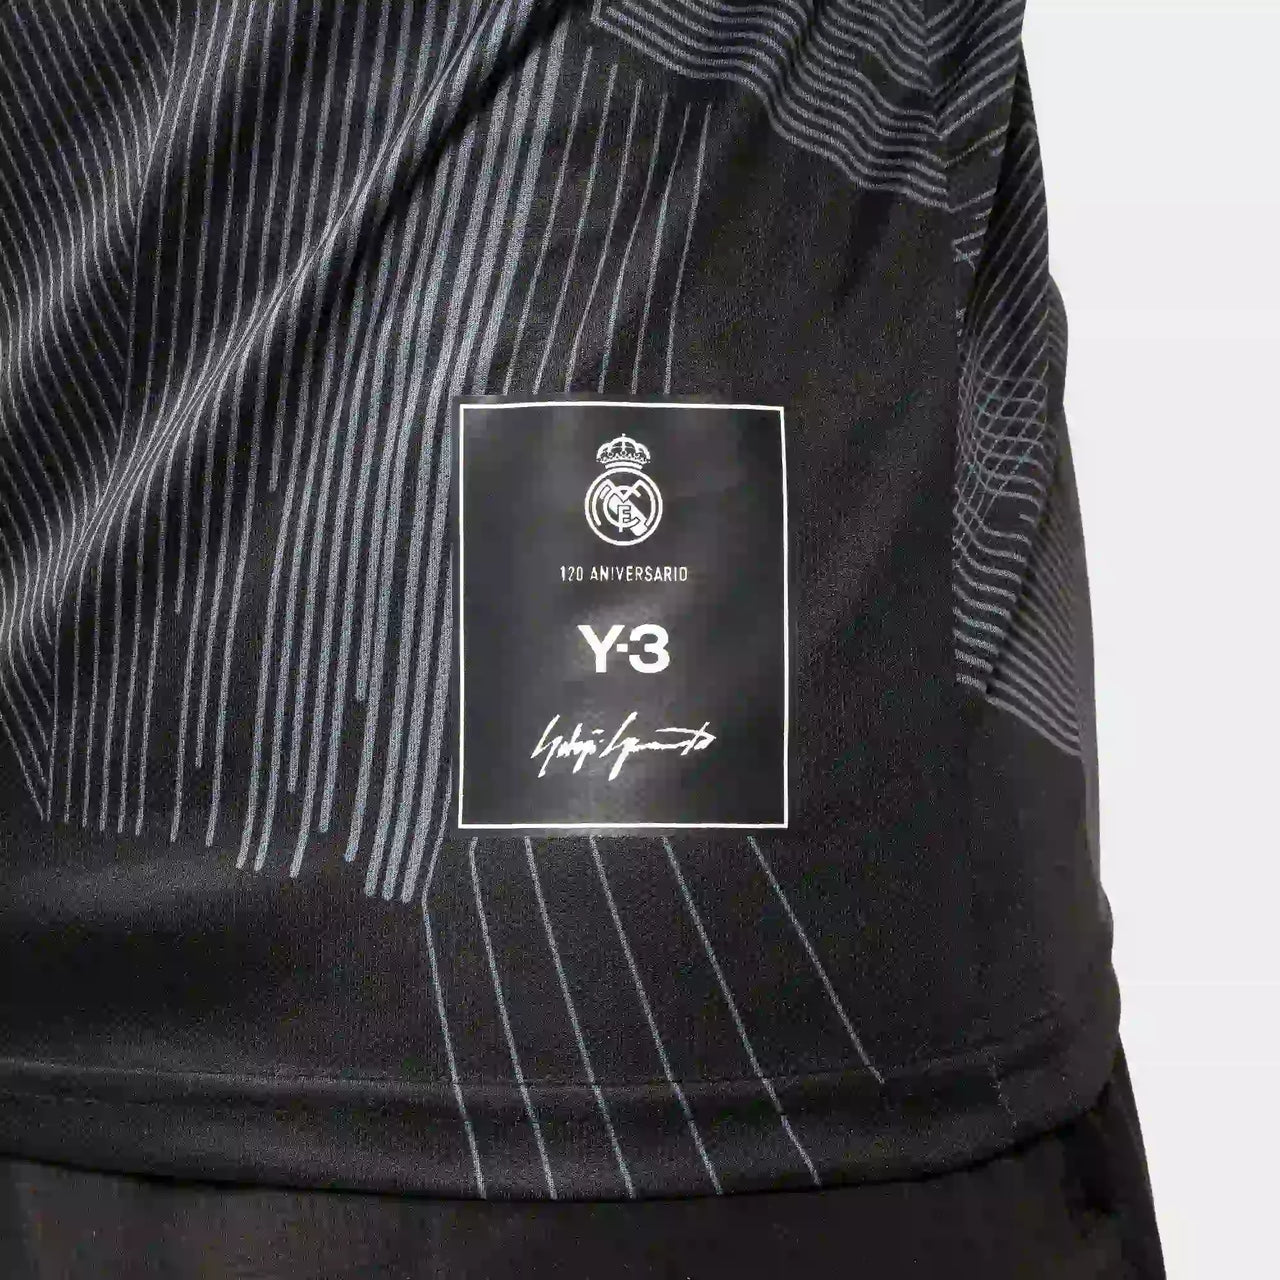 Madrid Y3 Special Edition Black Men Jersey